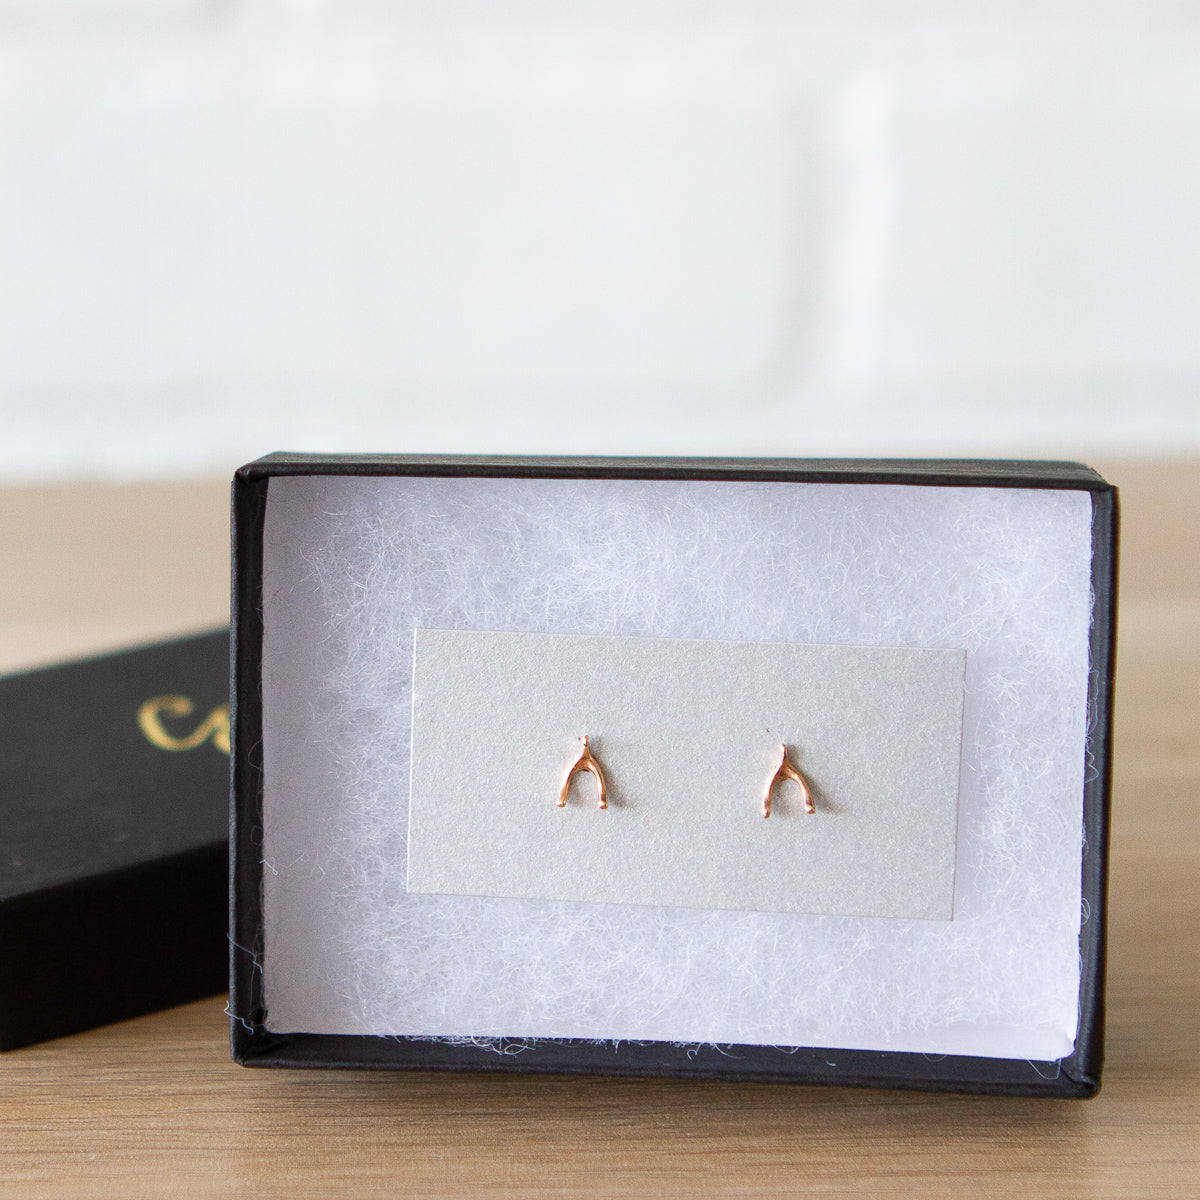 rose gold wishbone stud earrings in a gift box